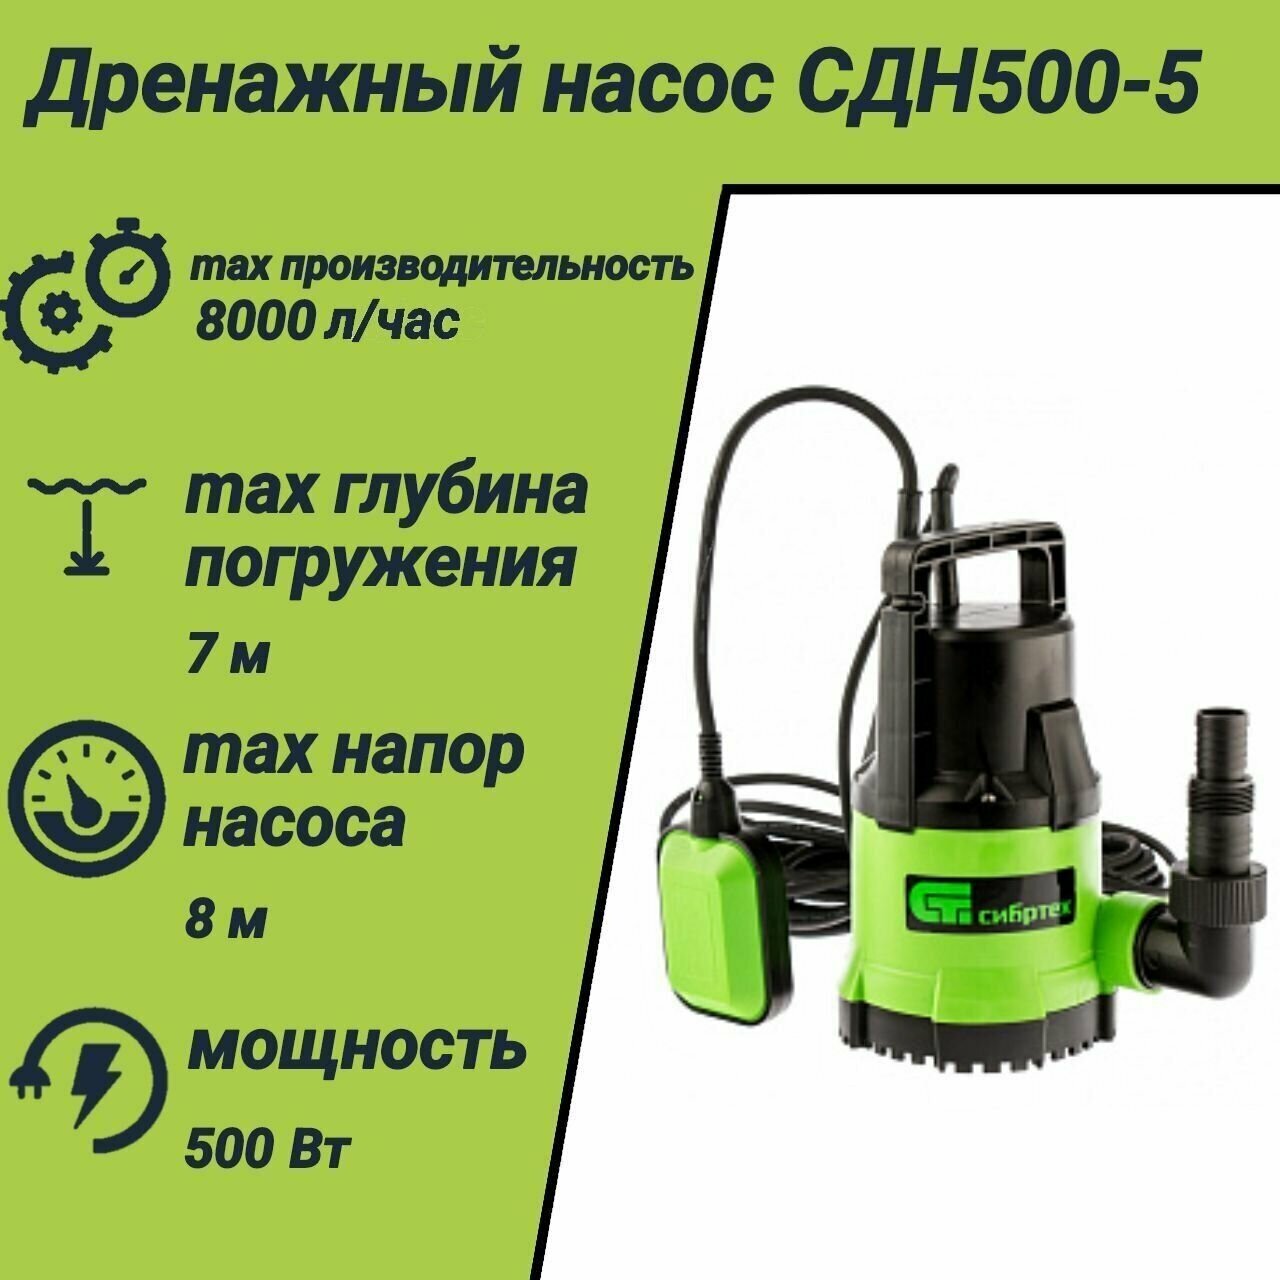 Дренажный насос для чистой воды СДН500-5, 500 Вт, напор 8 м, 8000 л/ч Сибртех